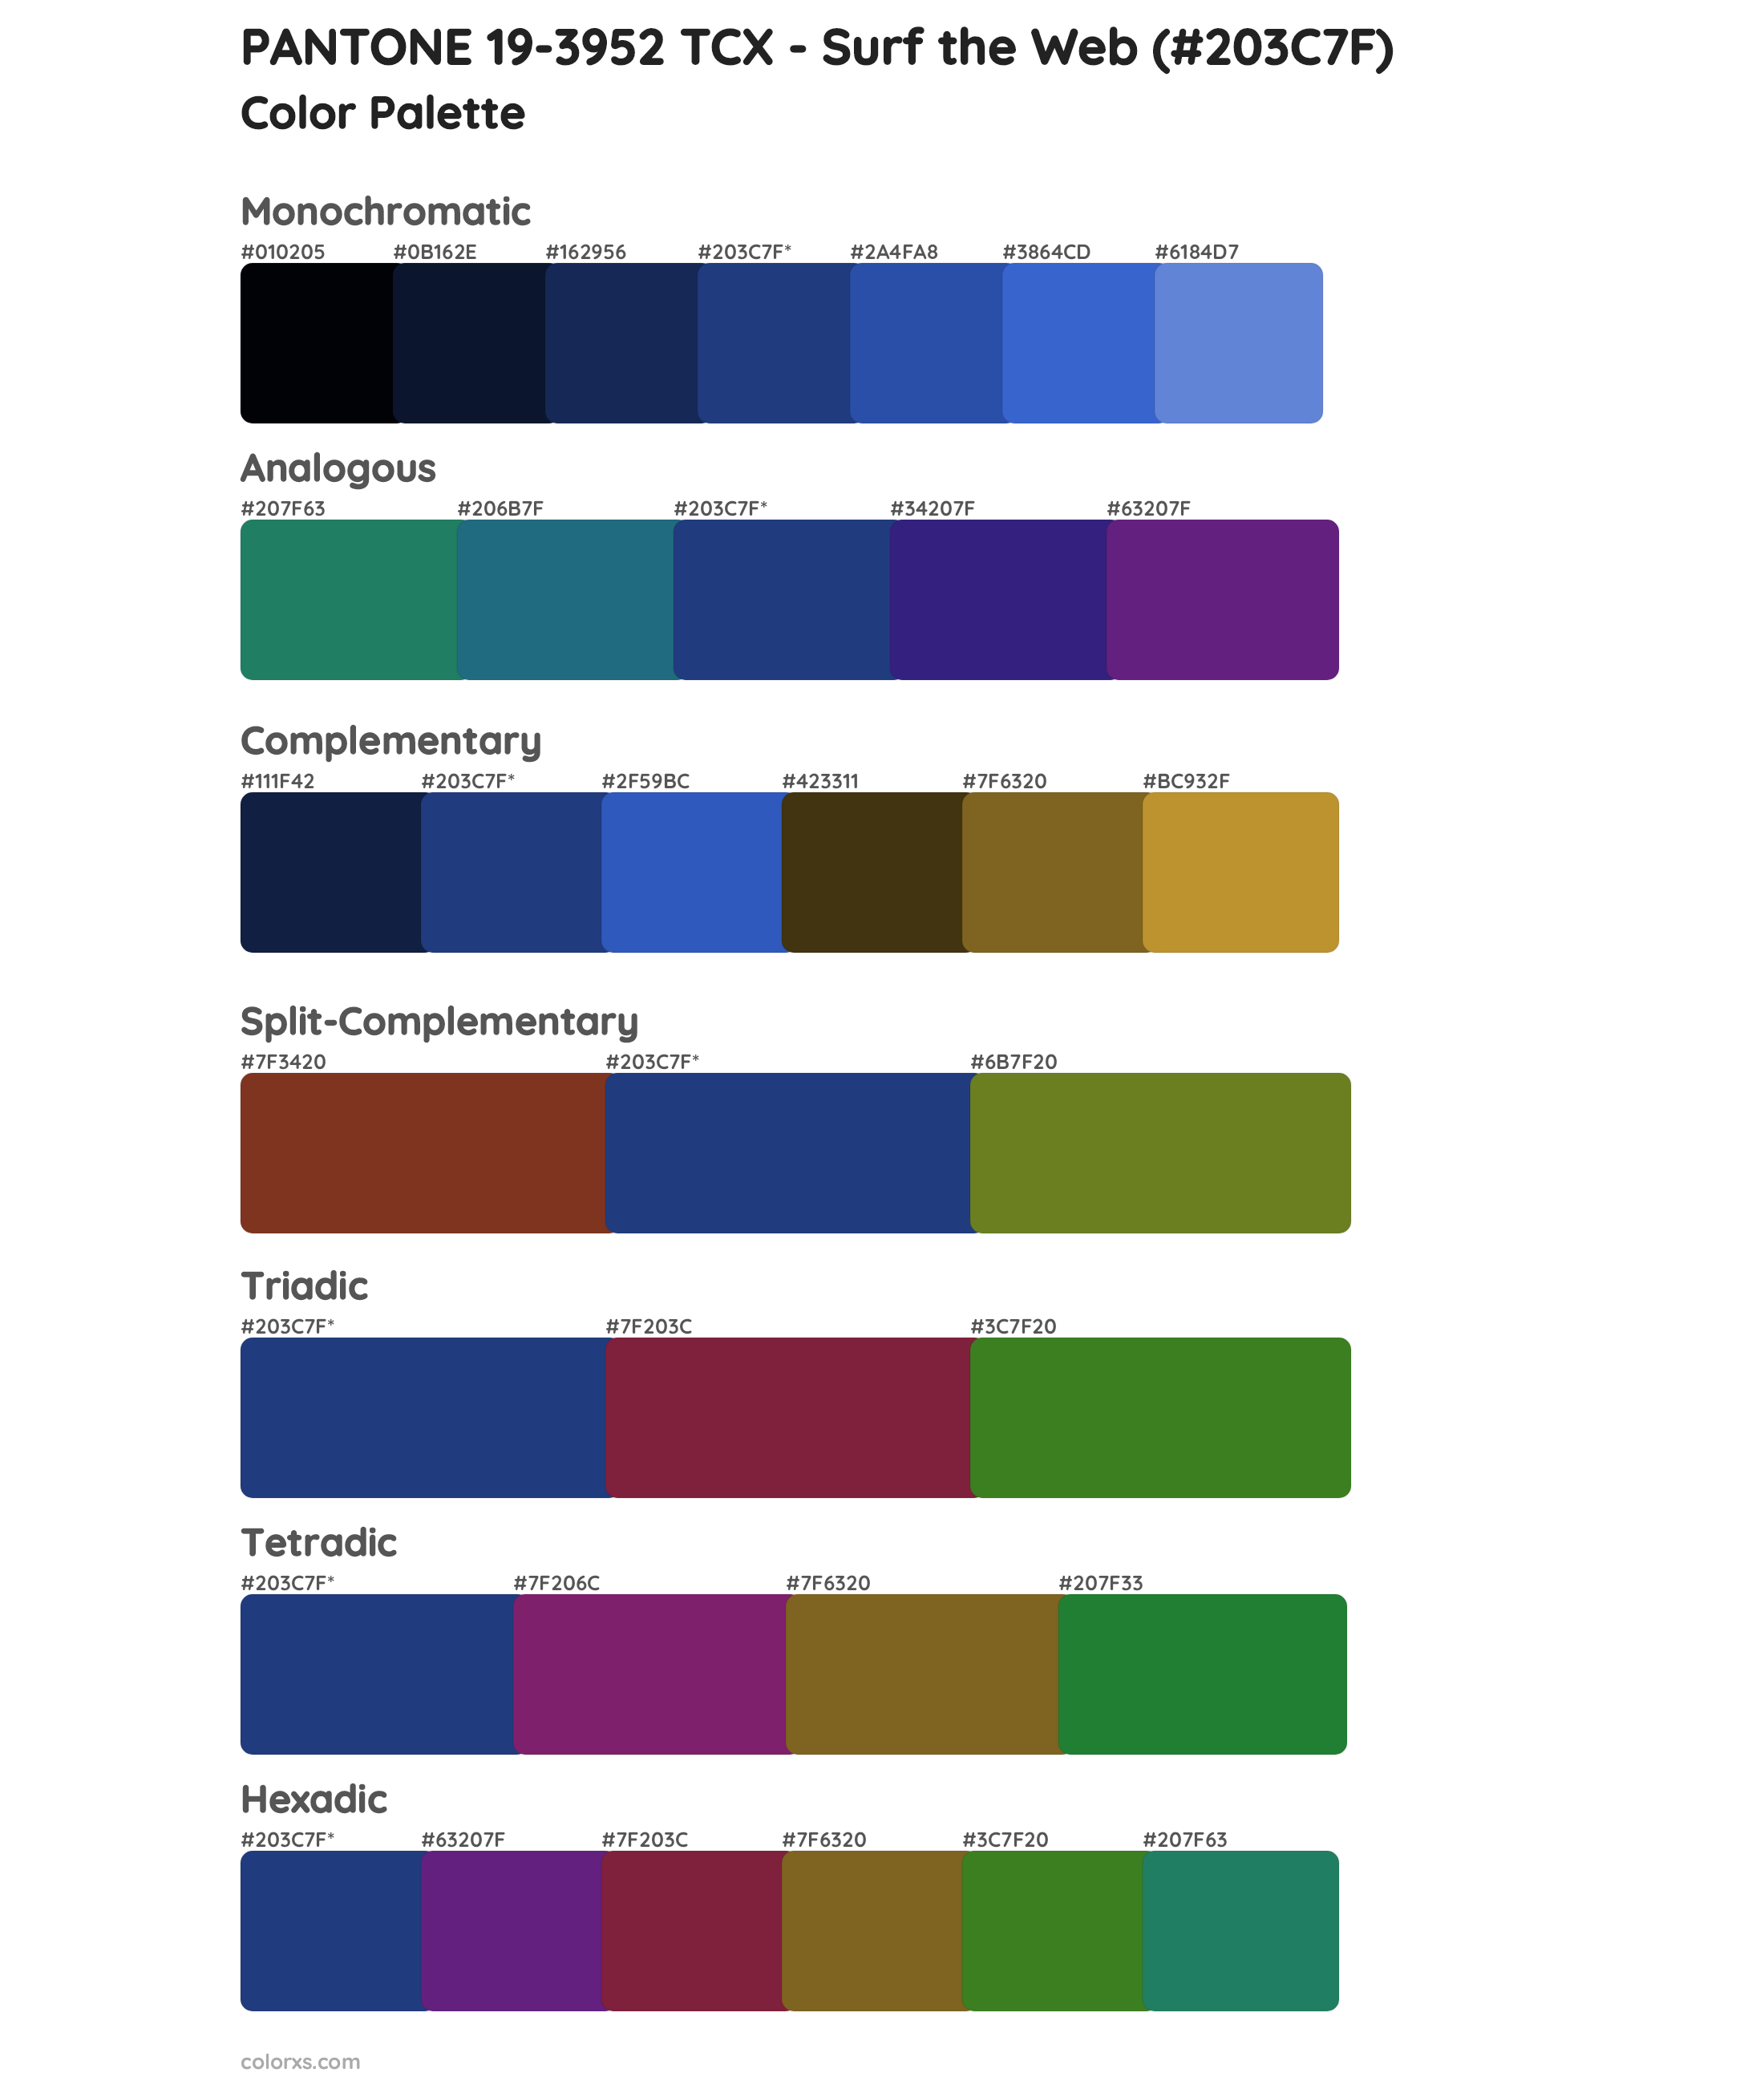 PANTONE 19-3952 TCX - Surf the Web Color Scheme Palettes